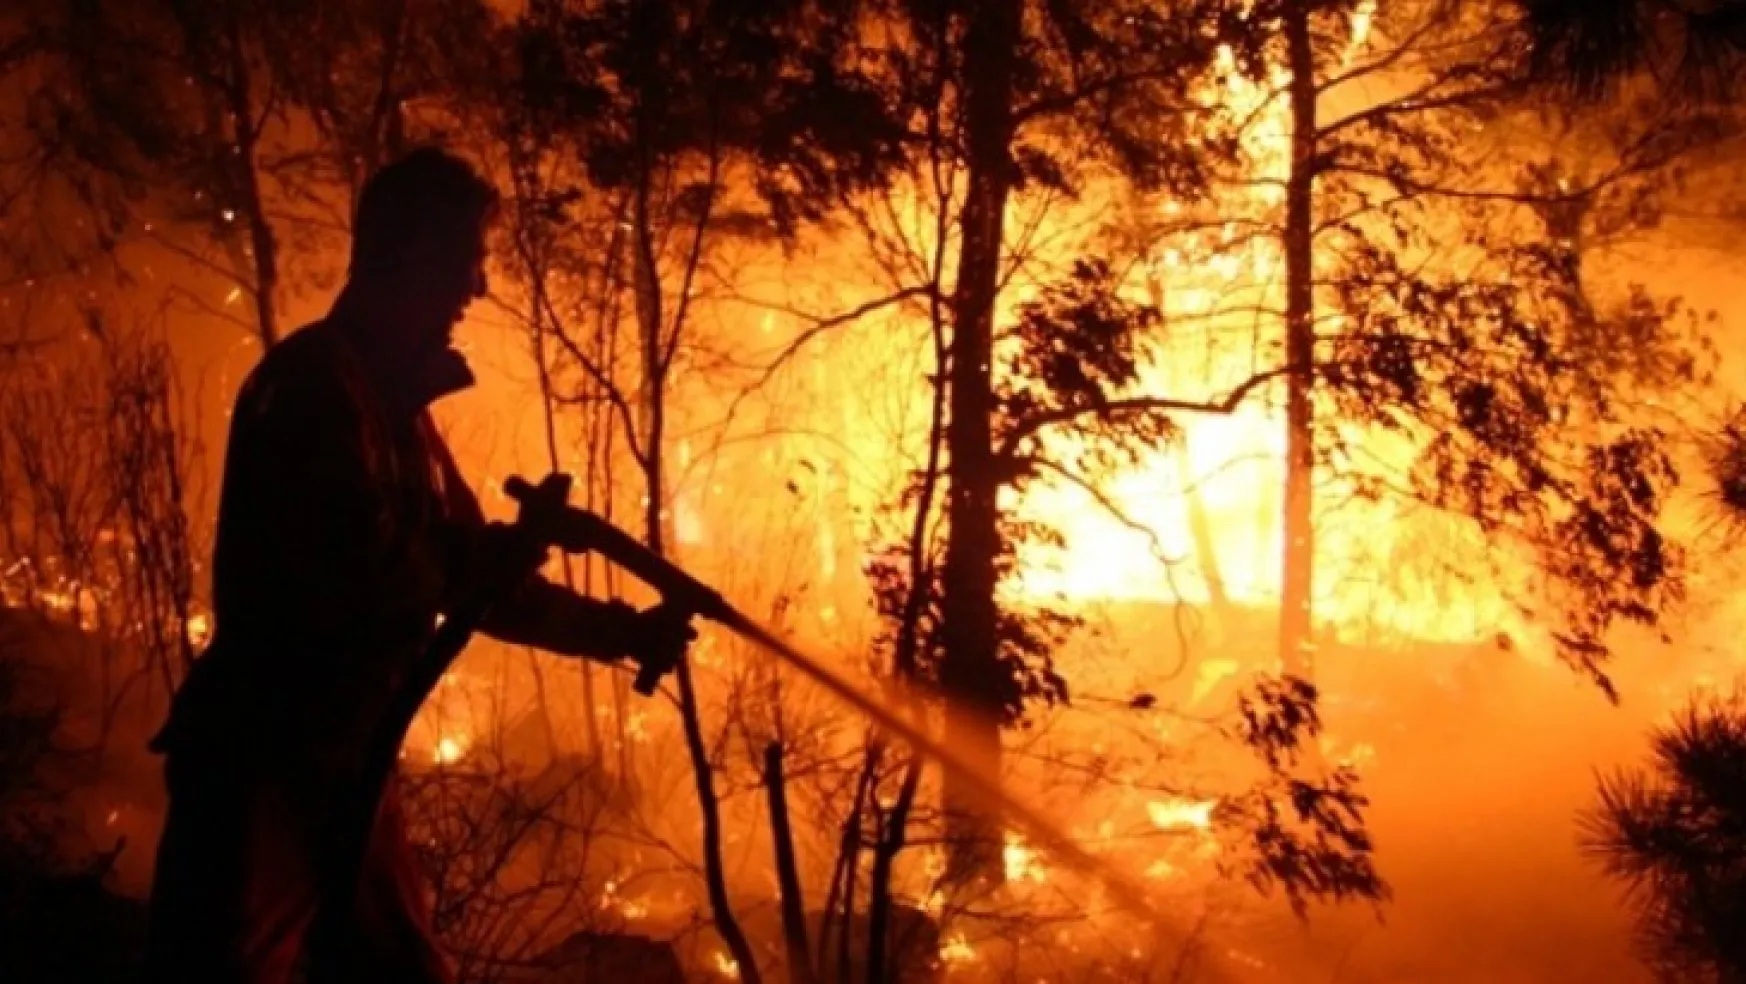 Bakanlık 81 İl Valiliğine Ormanlık Alanlarda Ateş Yakılmaması Genelgesi gönderdi